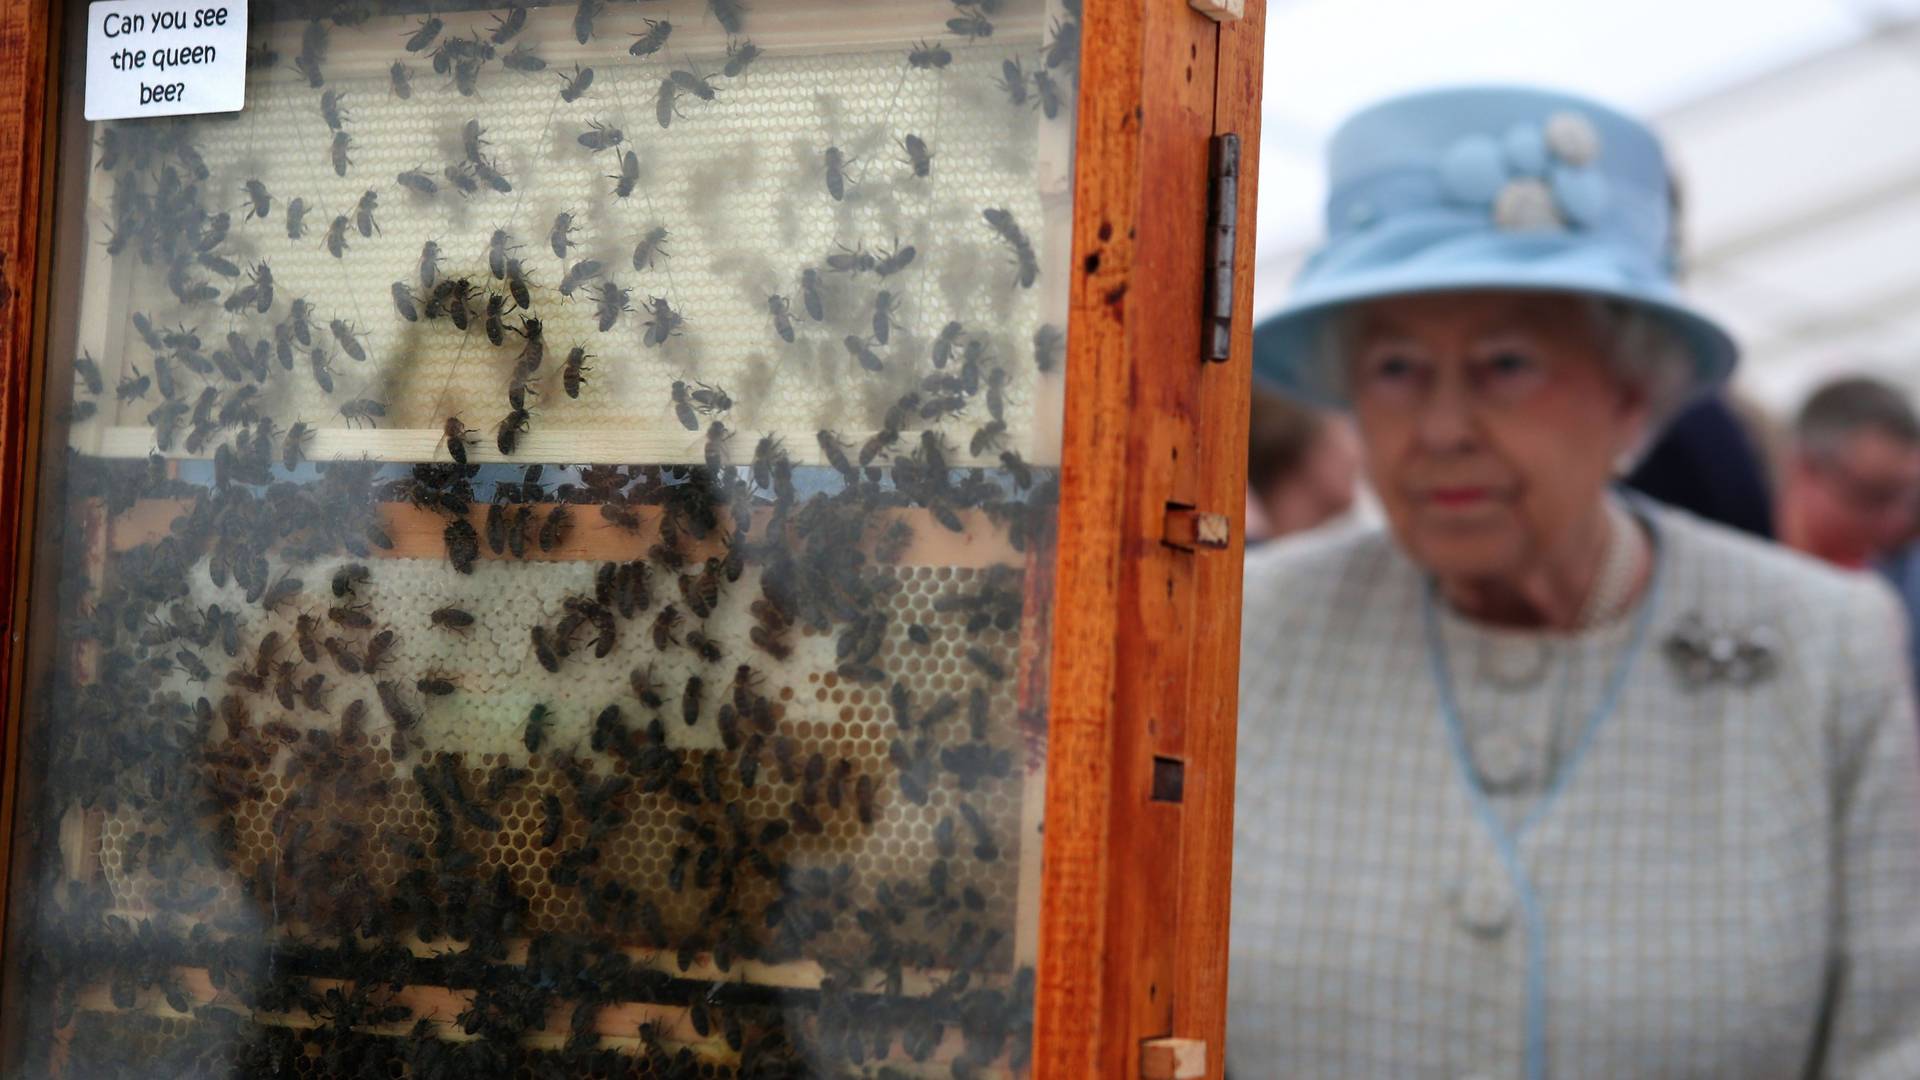 Pszczoły królowej zostały poinformowane o jej śmierci. To część tradycji